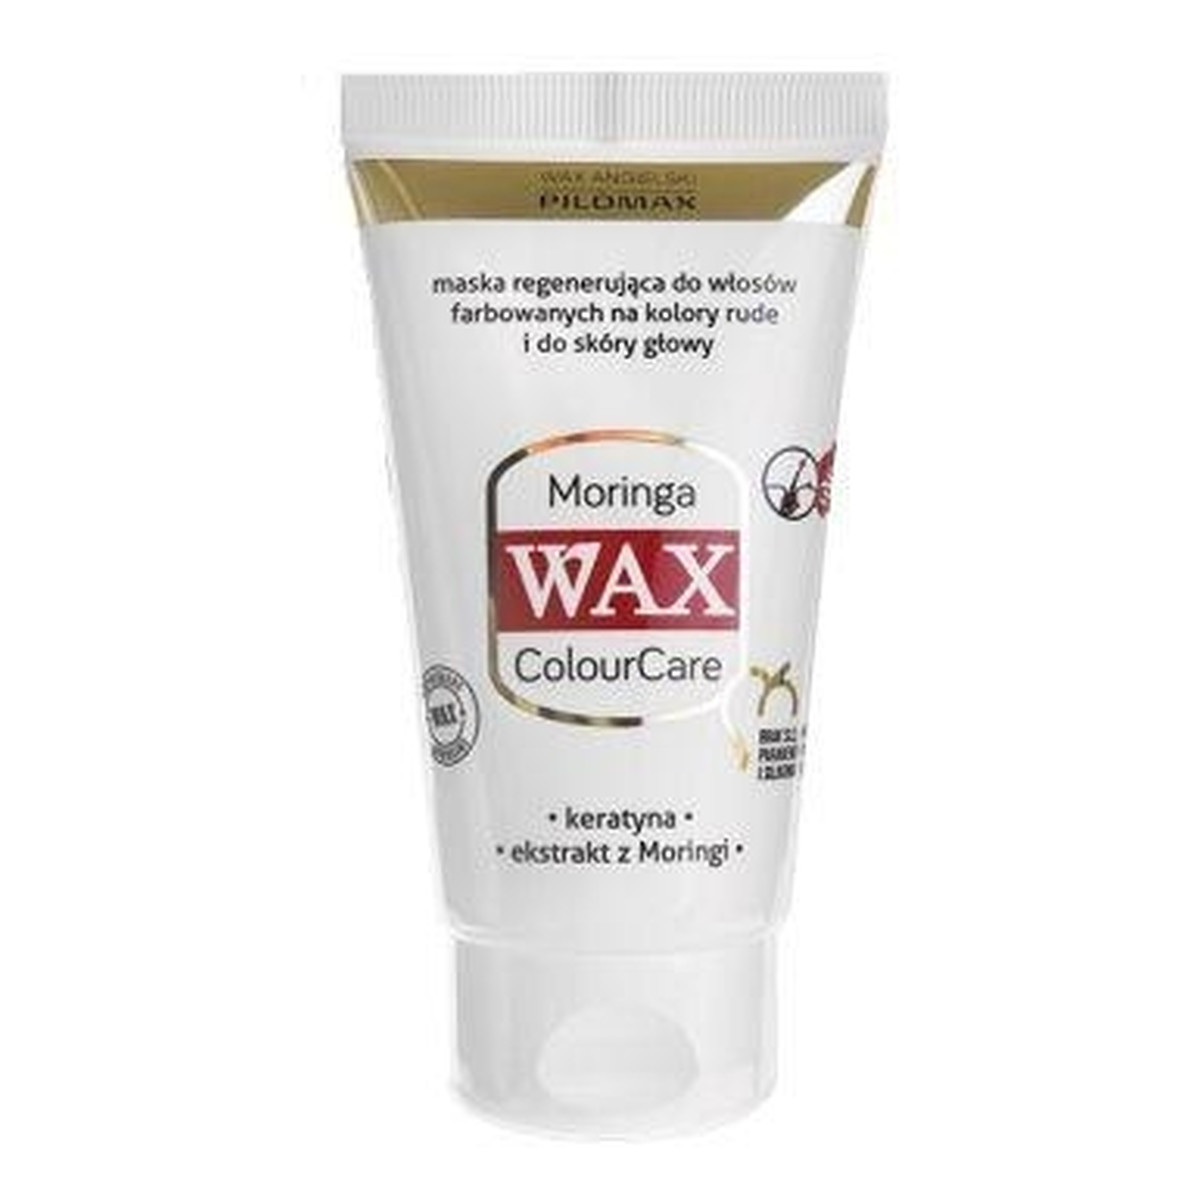 Pilomax Wax Moringa Wax Maska Regenerująca Do Włosów Farbowanych Na kolory Rude I Do Skóry Głowy 70ml